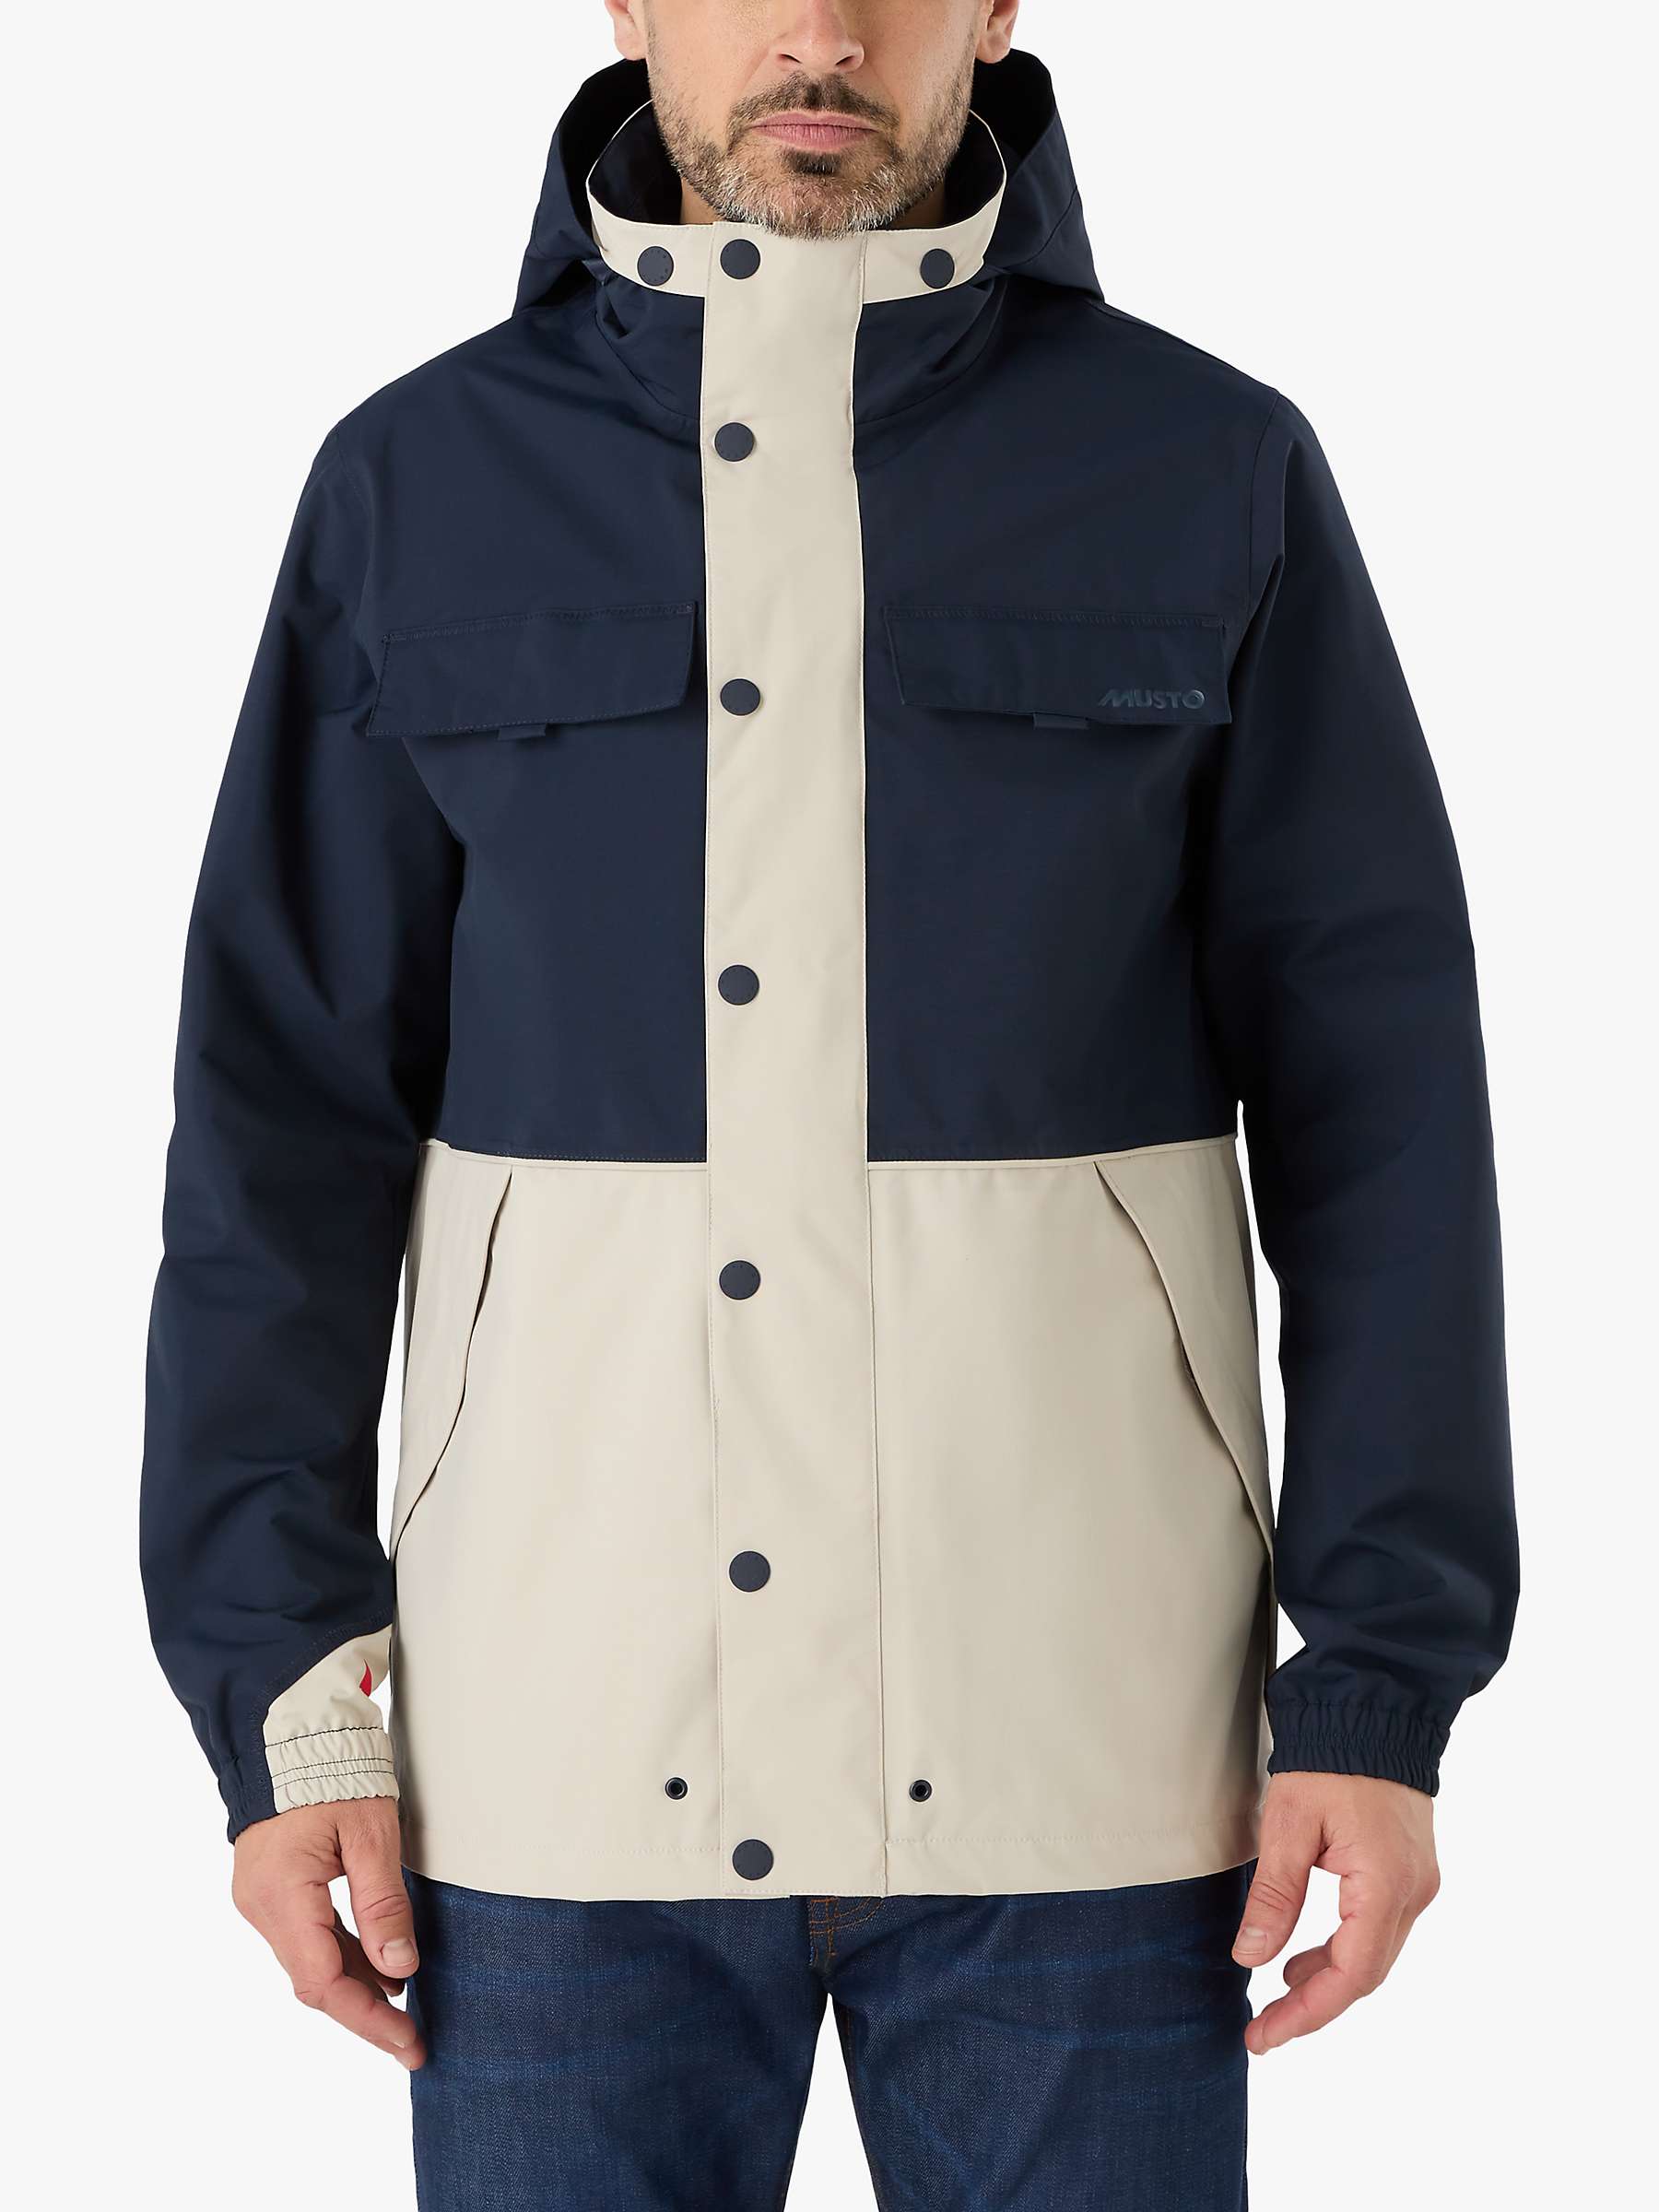 Buy Musto BRI Classic Waterproof Jacket, Pumice/Navy Online at johnlewis.com